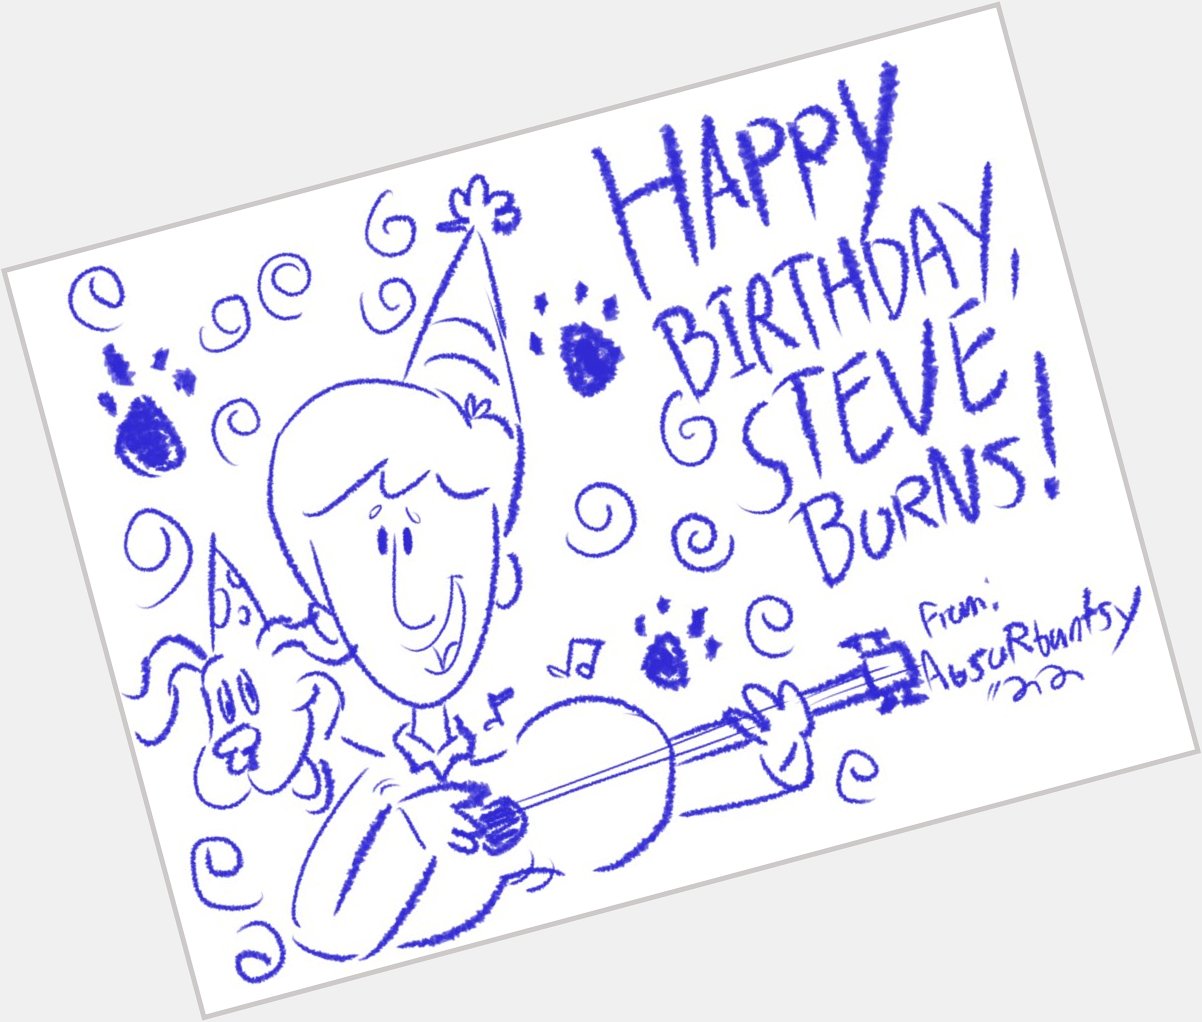 Happy birthday to Steve Burns! 